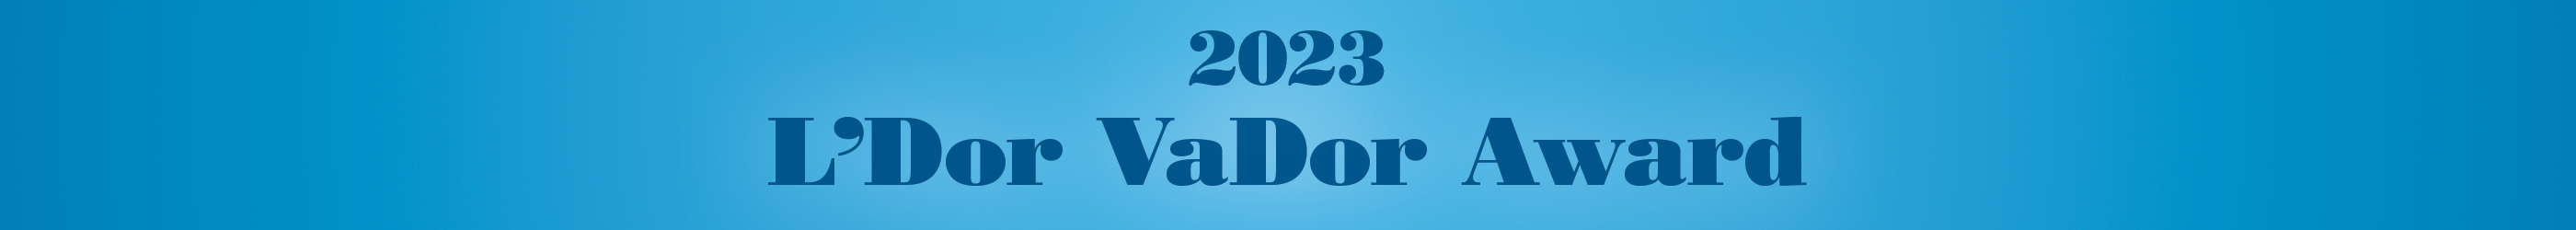 2023 L'Dor Vador Award